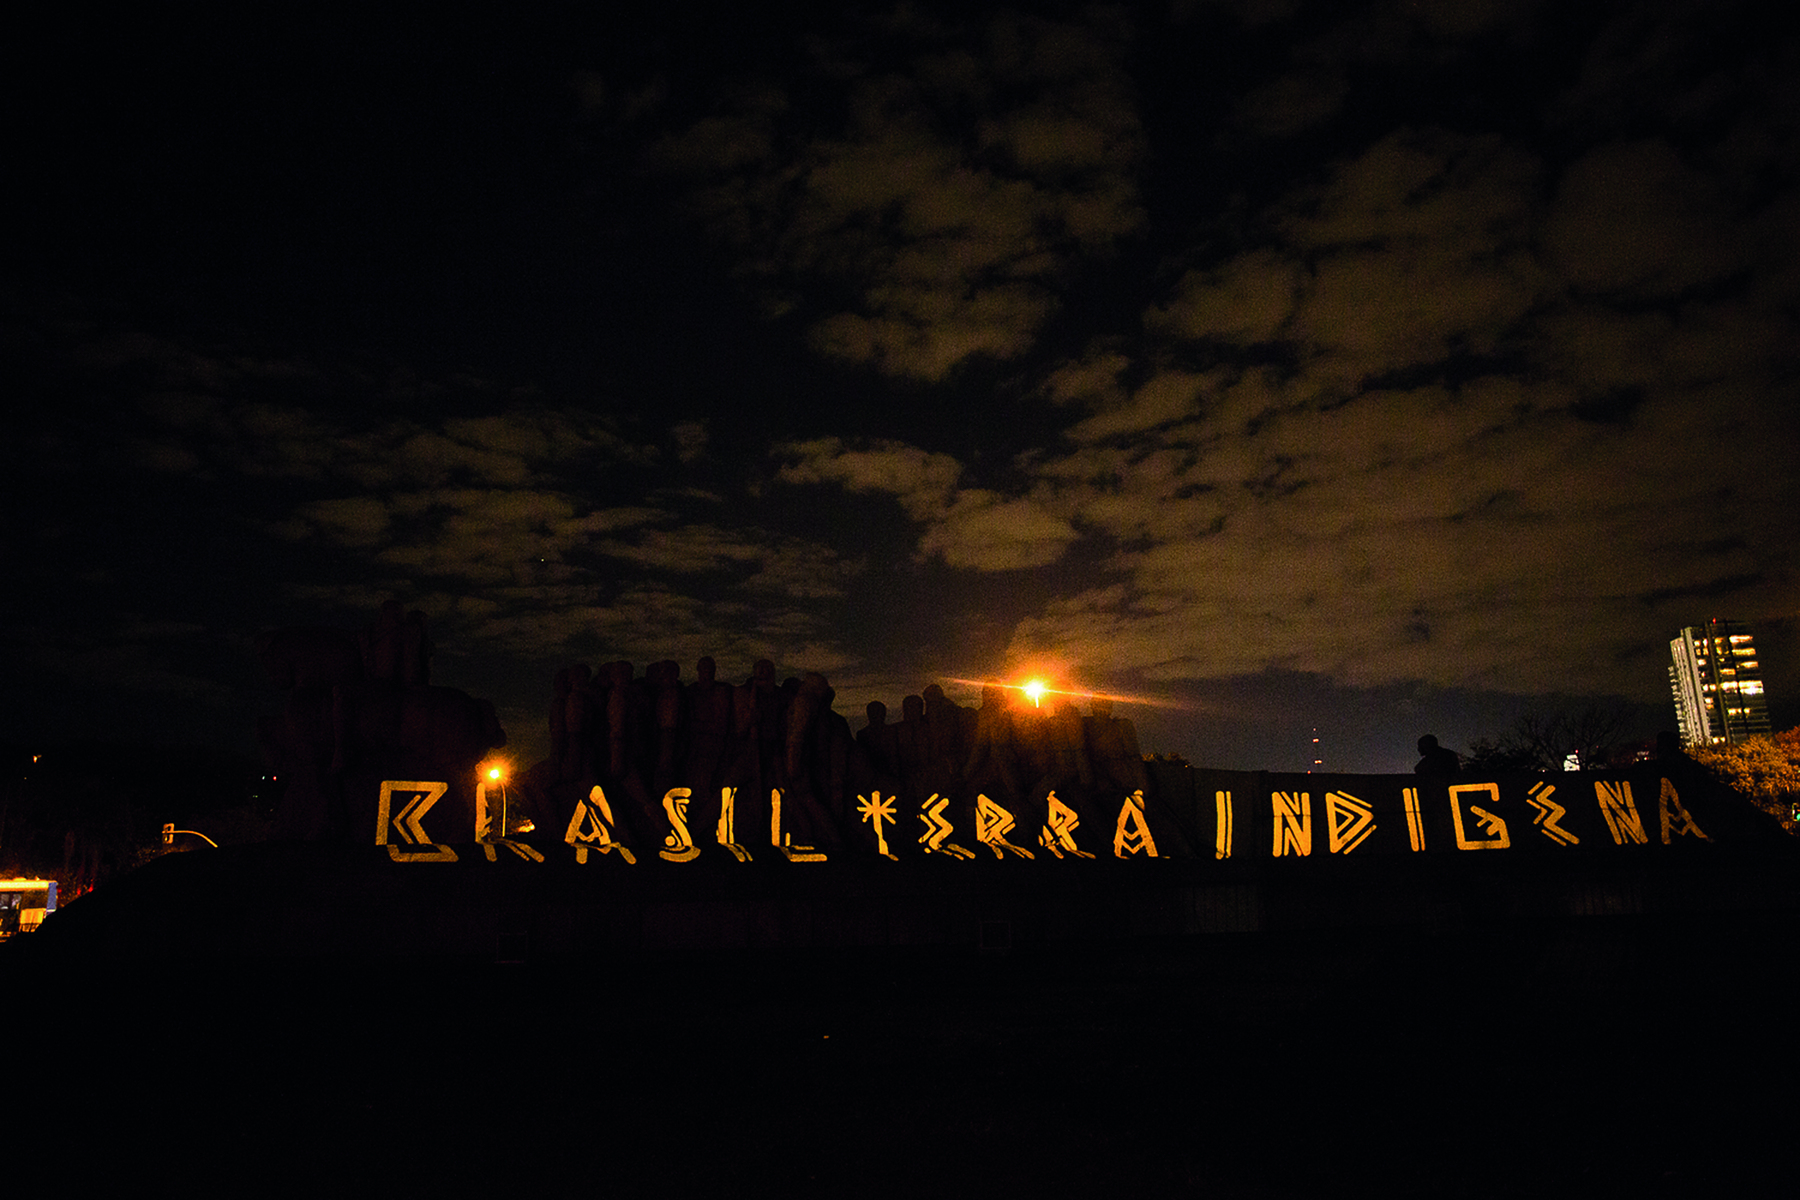 Fotografia. Projeção da frase Brasil Terra Indígena em um monumento ao entardecer. As letras apresentam grafismo que remete à arte indígena. Céu com nuvens.